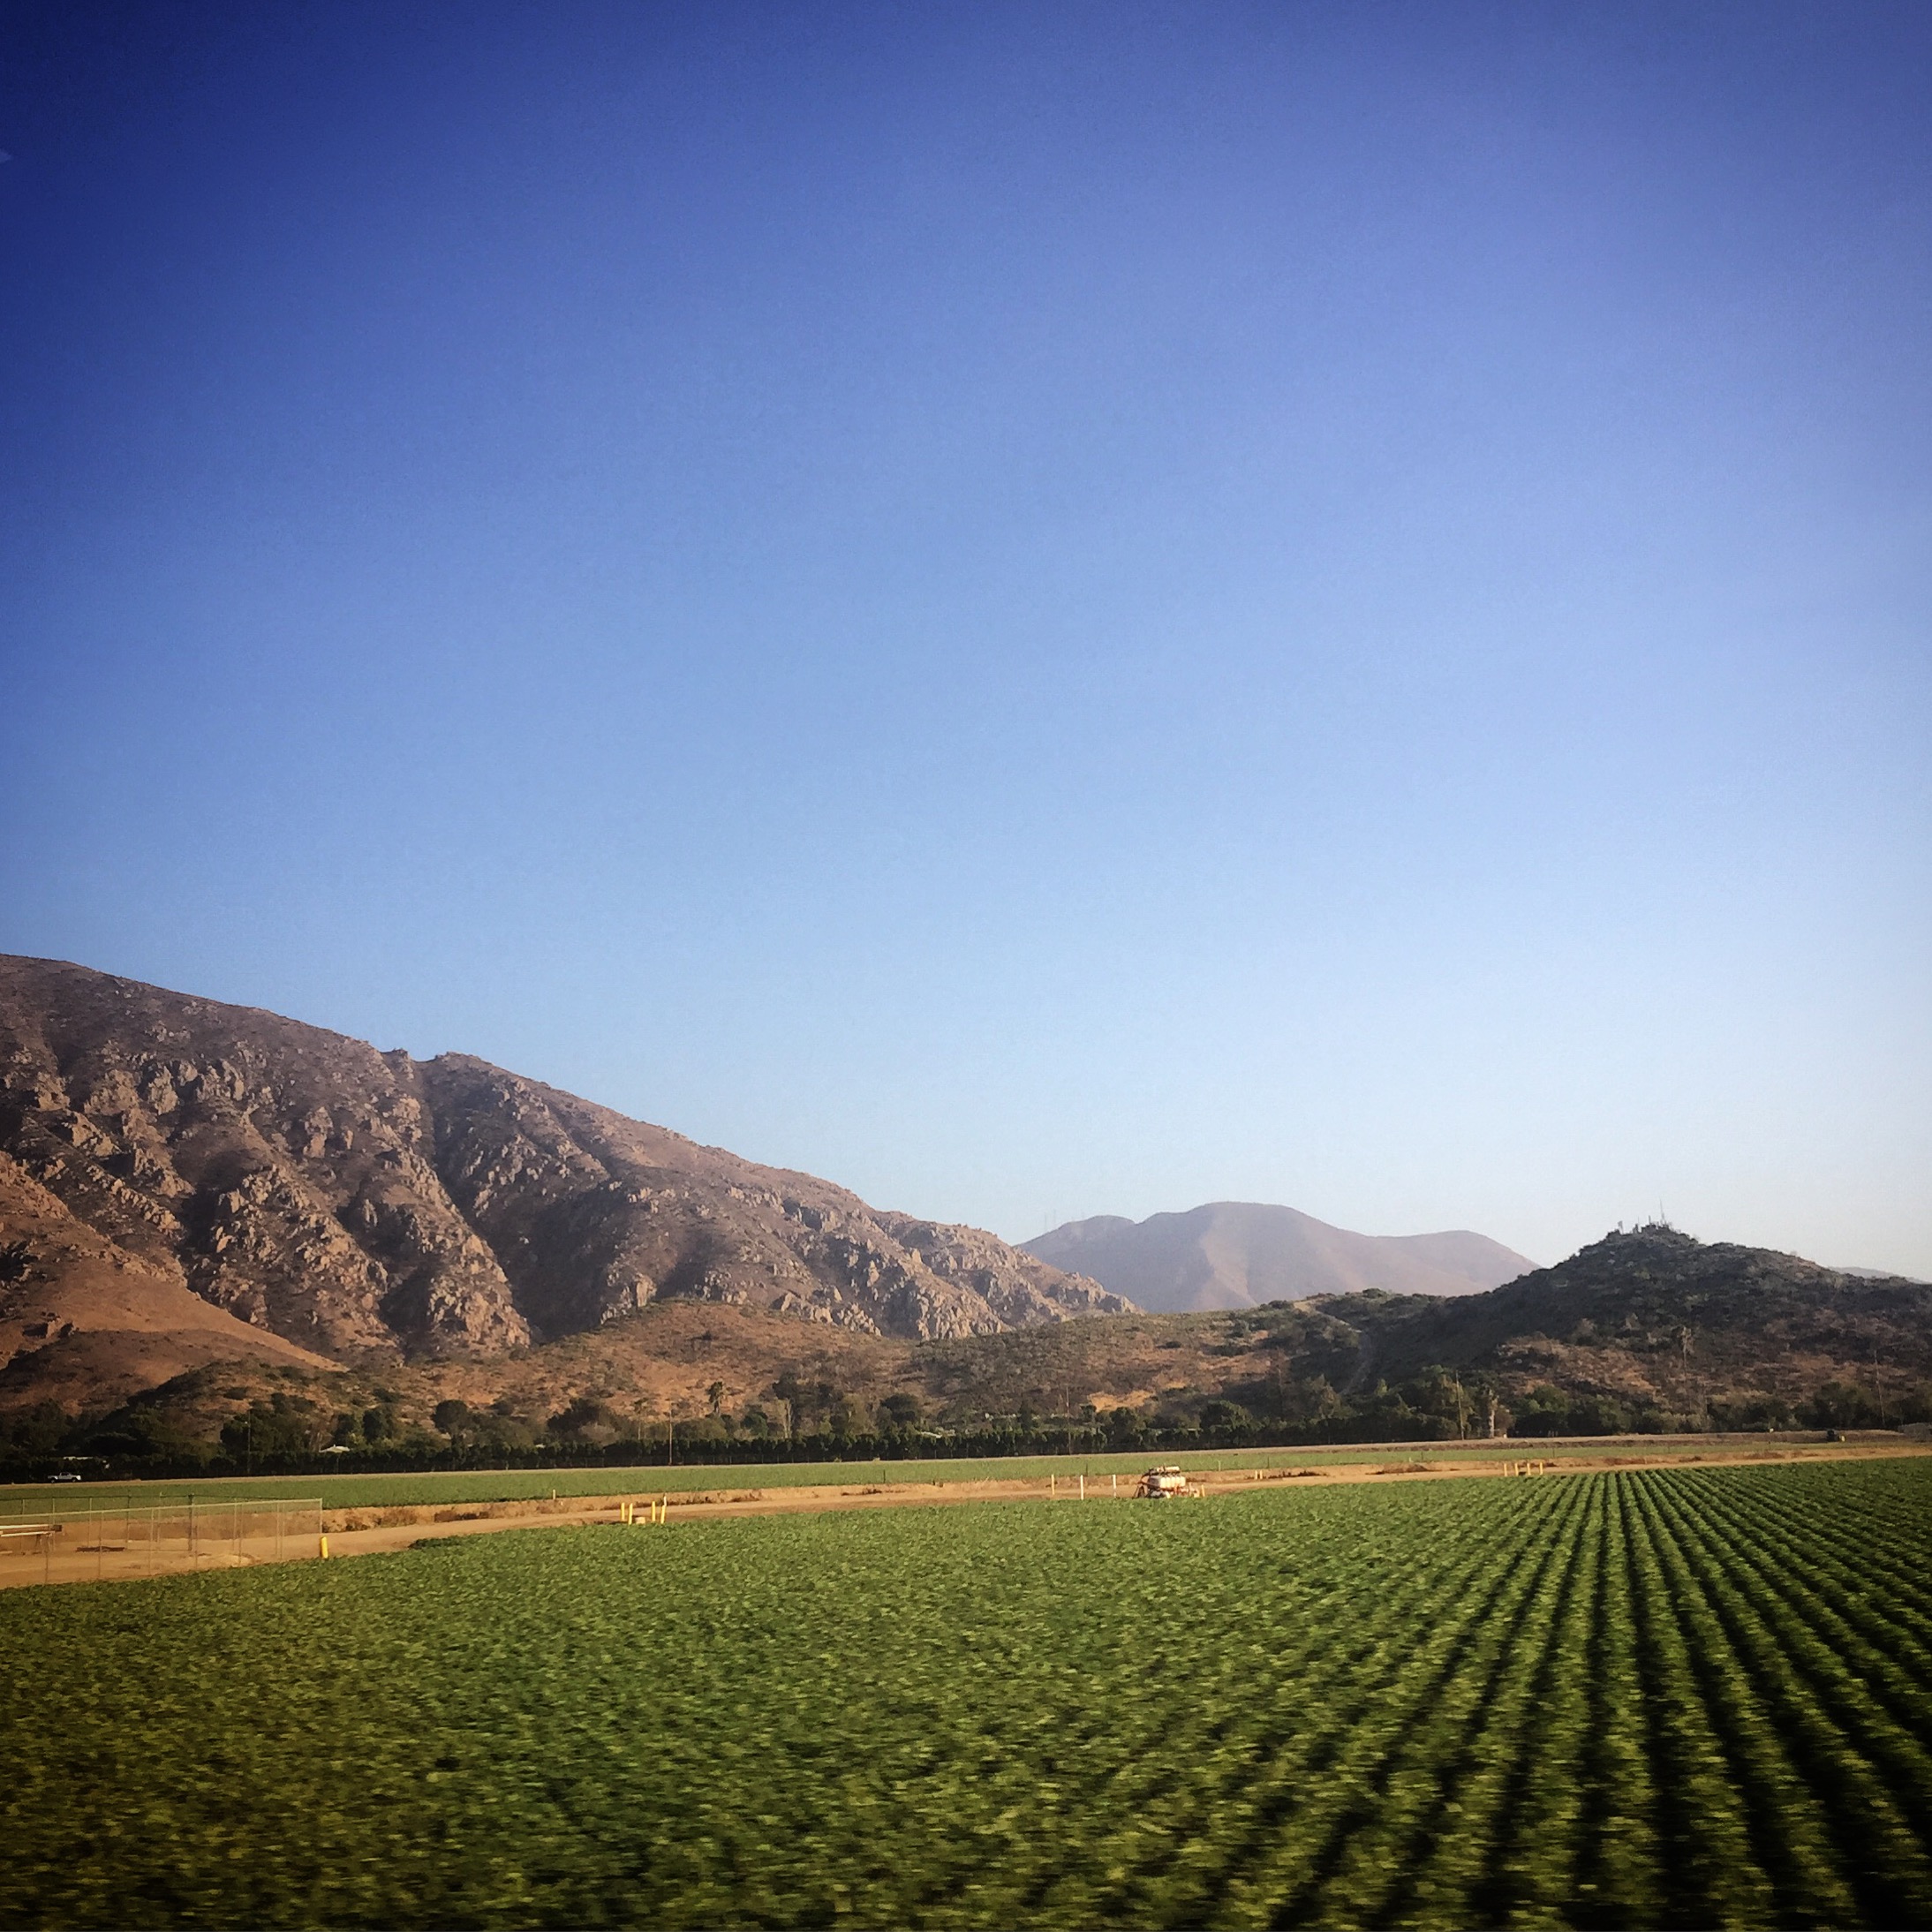 California Agriculture